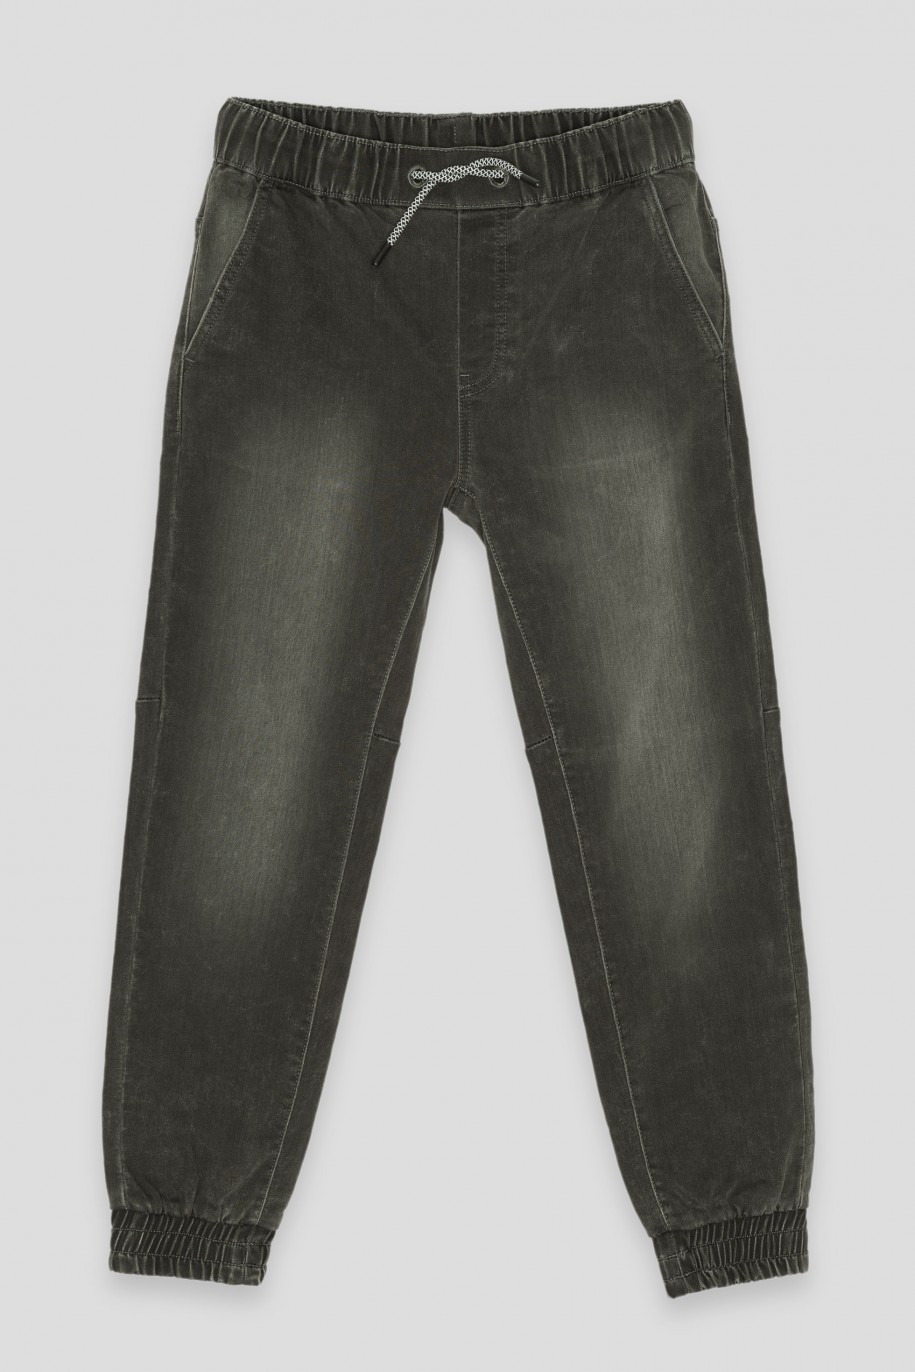 Szare jeansy typu JOGGER o luźnym kroju - 40851